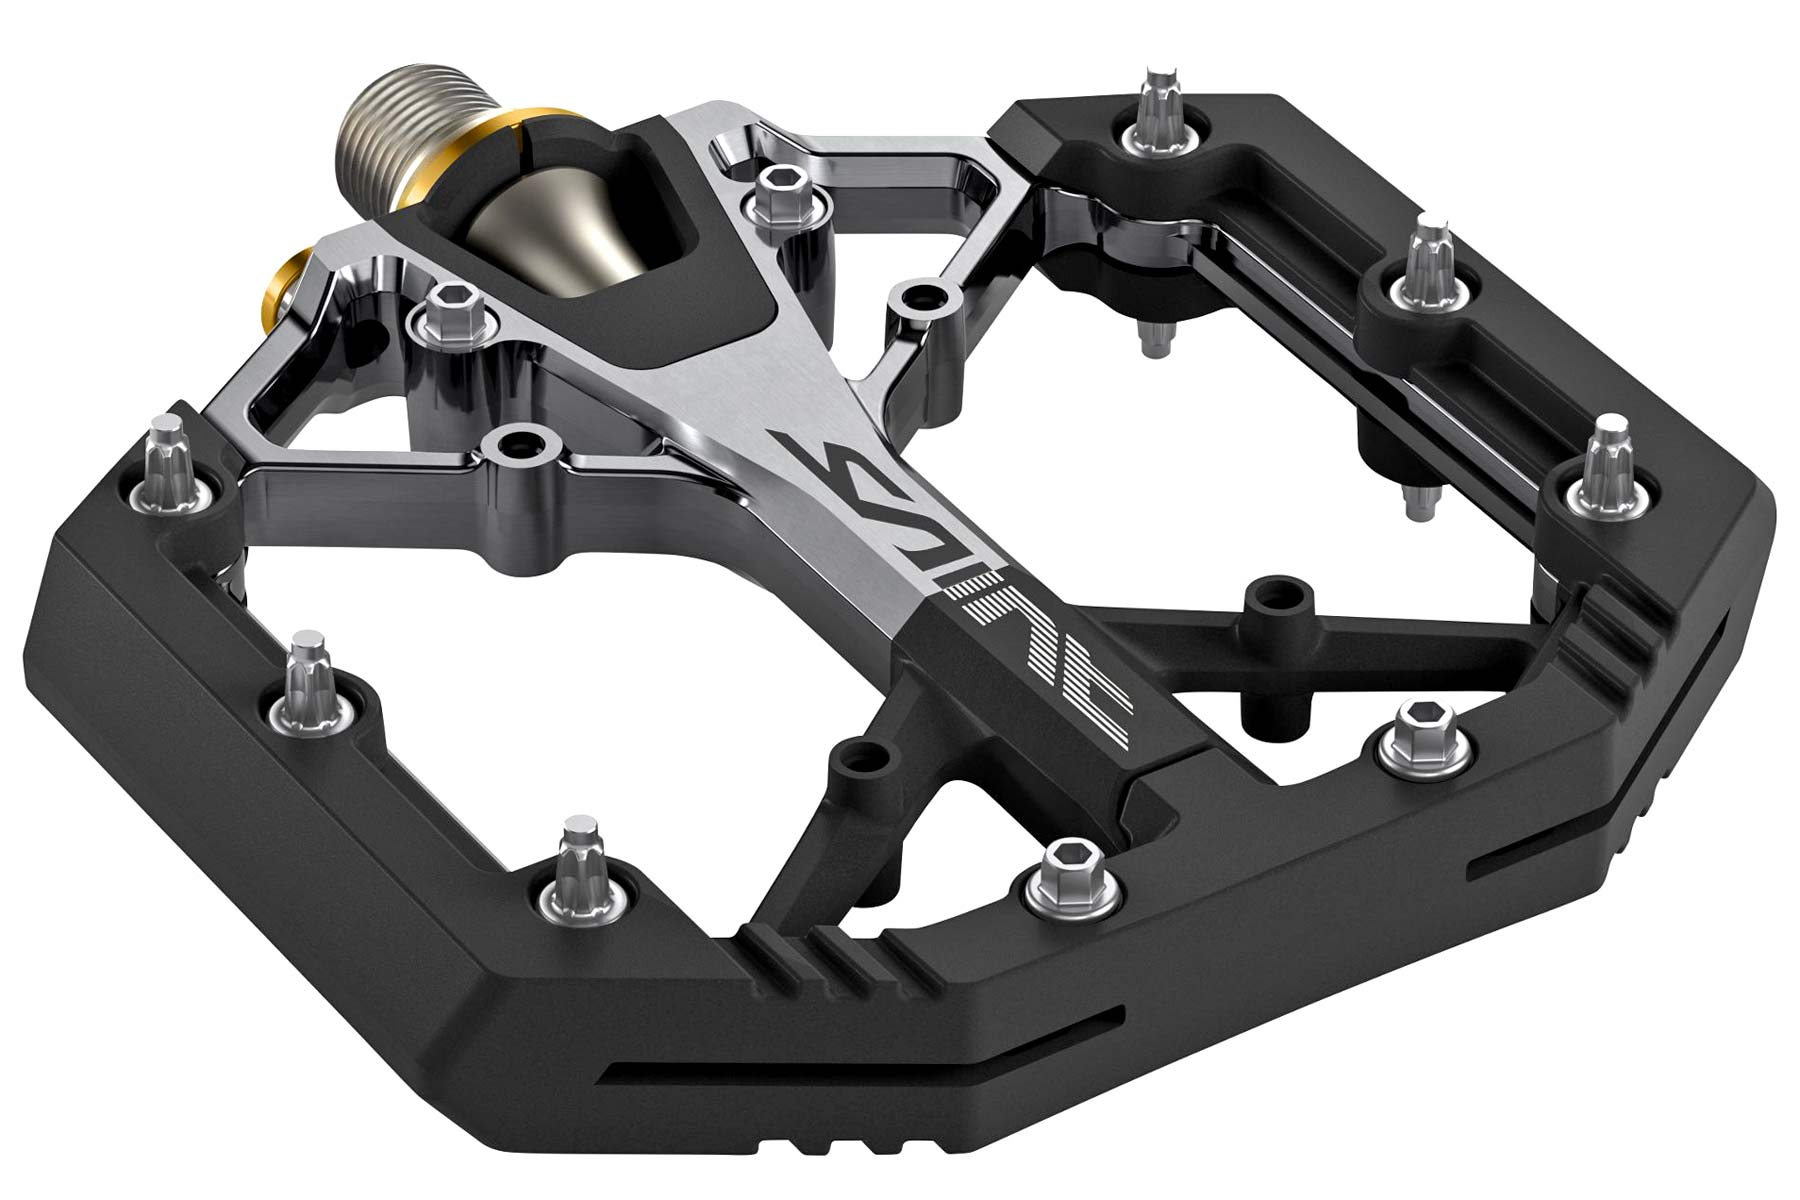 Touhou Over het algemeen liefdadigheid All-new, much lighter Shimano XT & Saint platform pedals! - Bikerumor